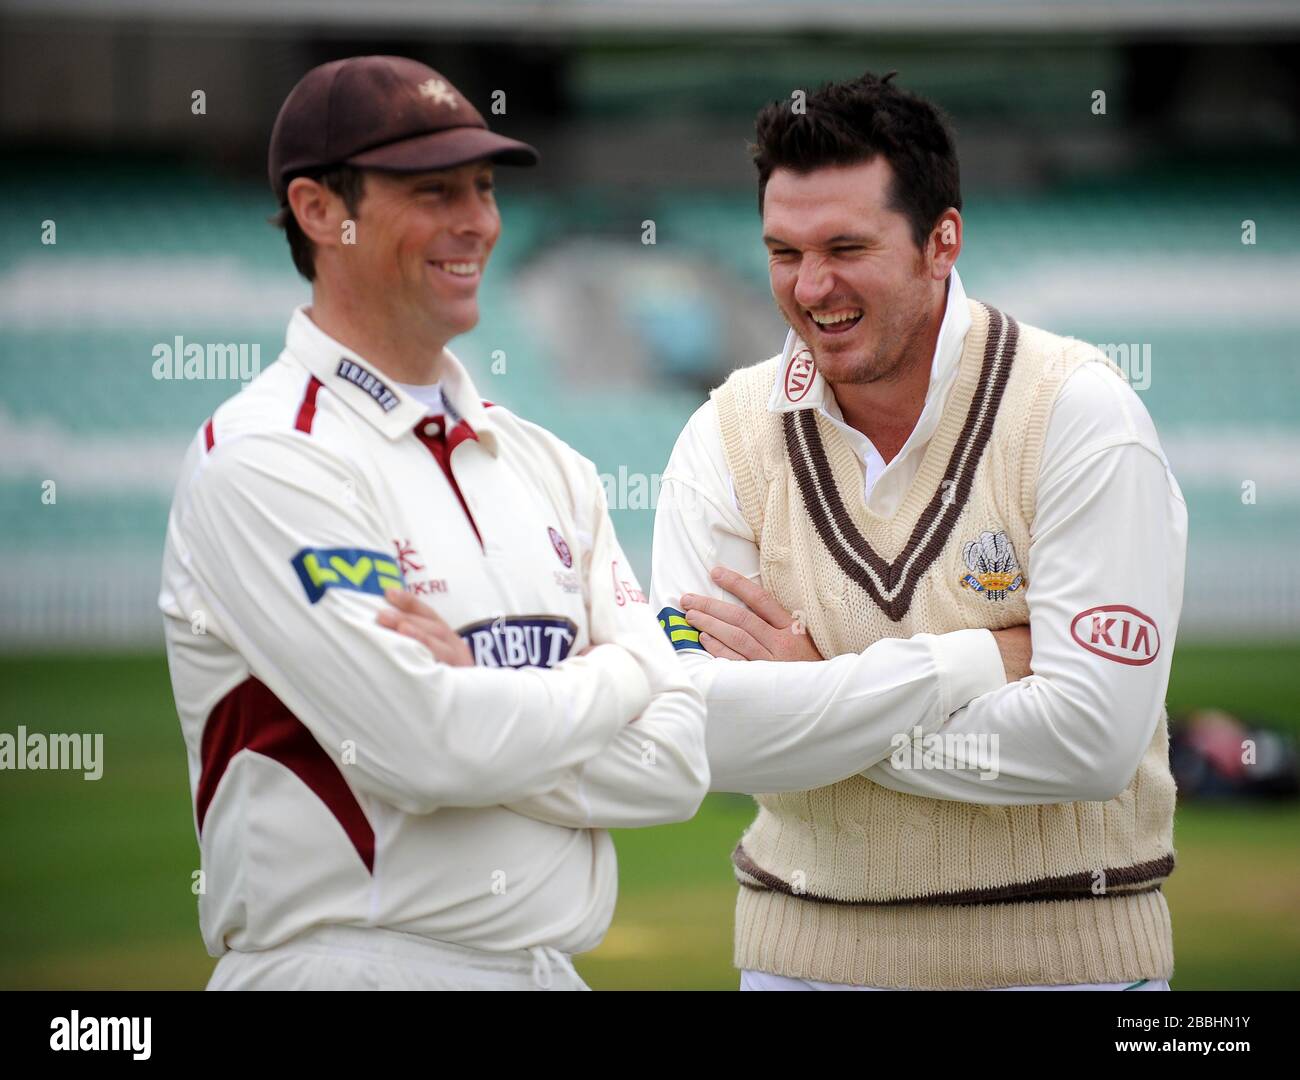 Surreys Kapitän Graeme Smith (rechts) teilt vor Spielbeginn einen Witz mit Somersets Kapitän Marcus Trescodicke (links). Stockfoto